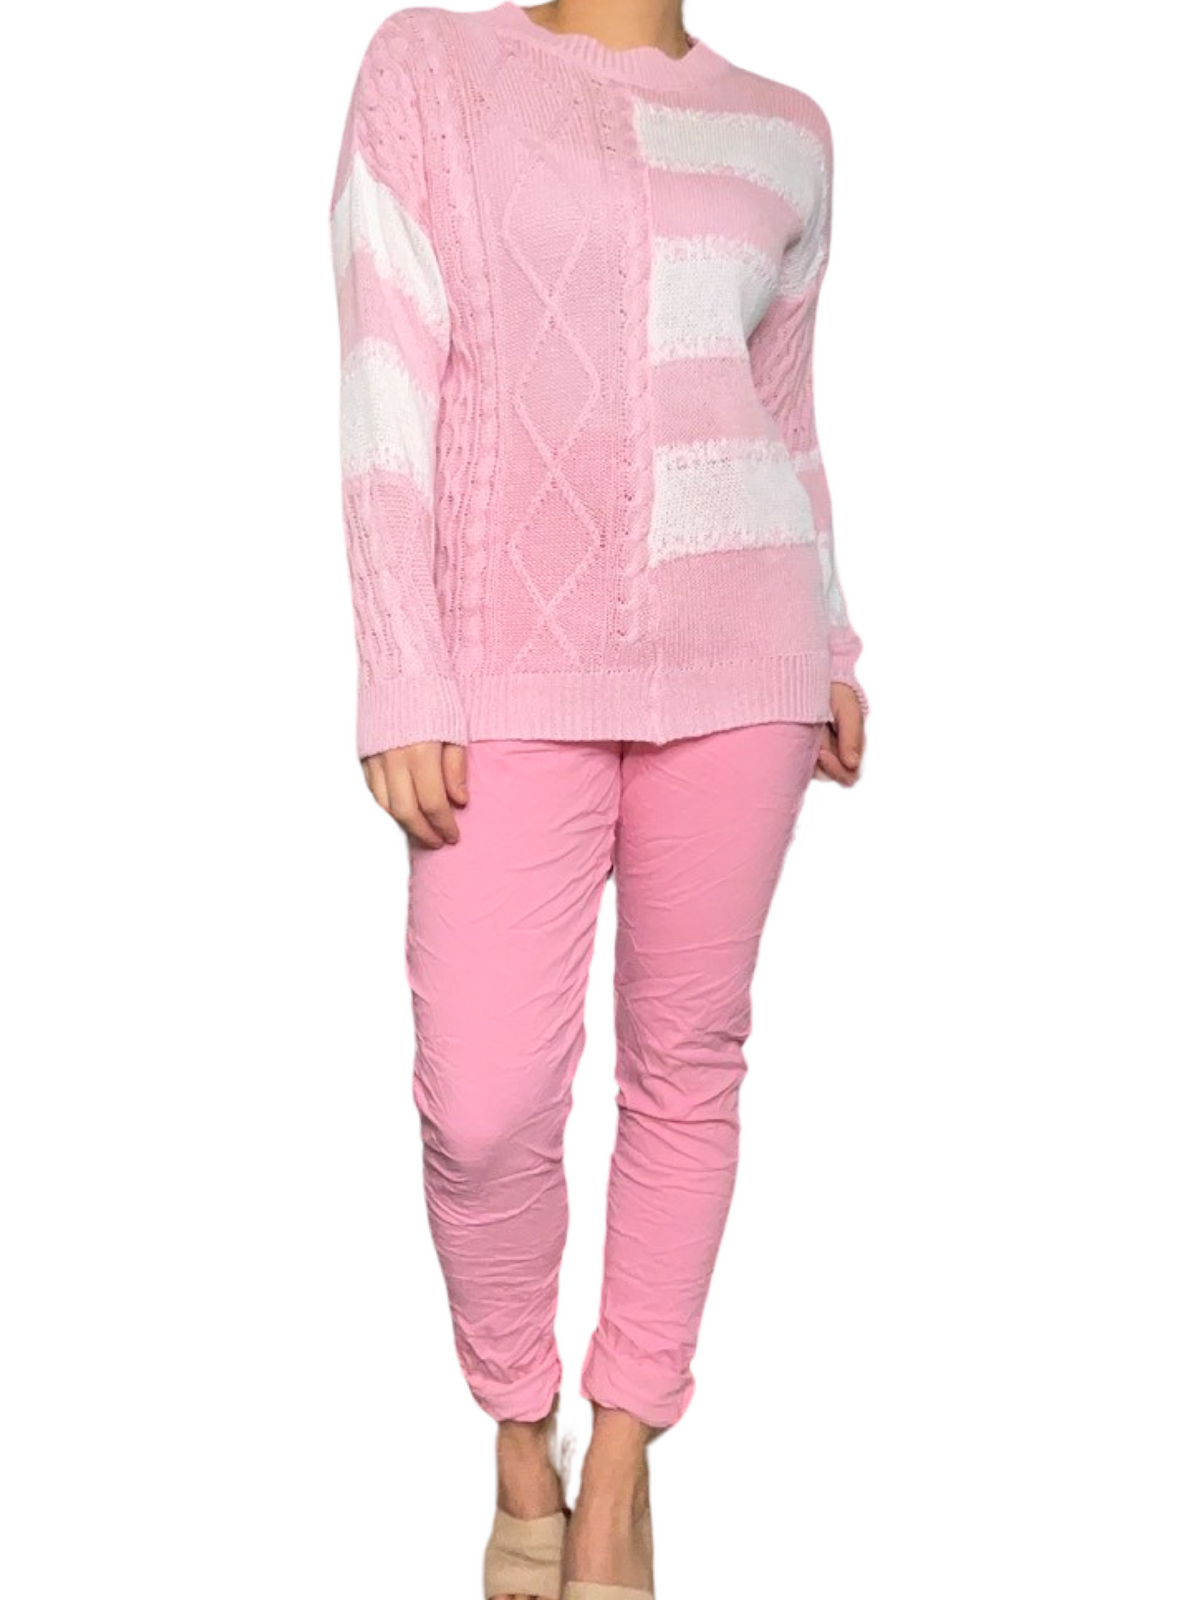 Pantalon rose pour femme à taille élastique avec cordon avec chandail à manche longue en tricot.